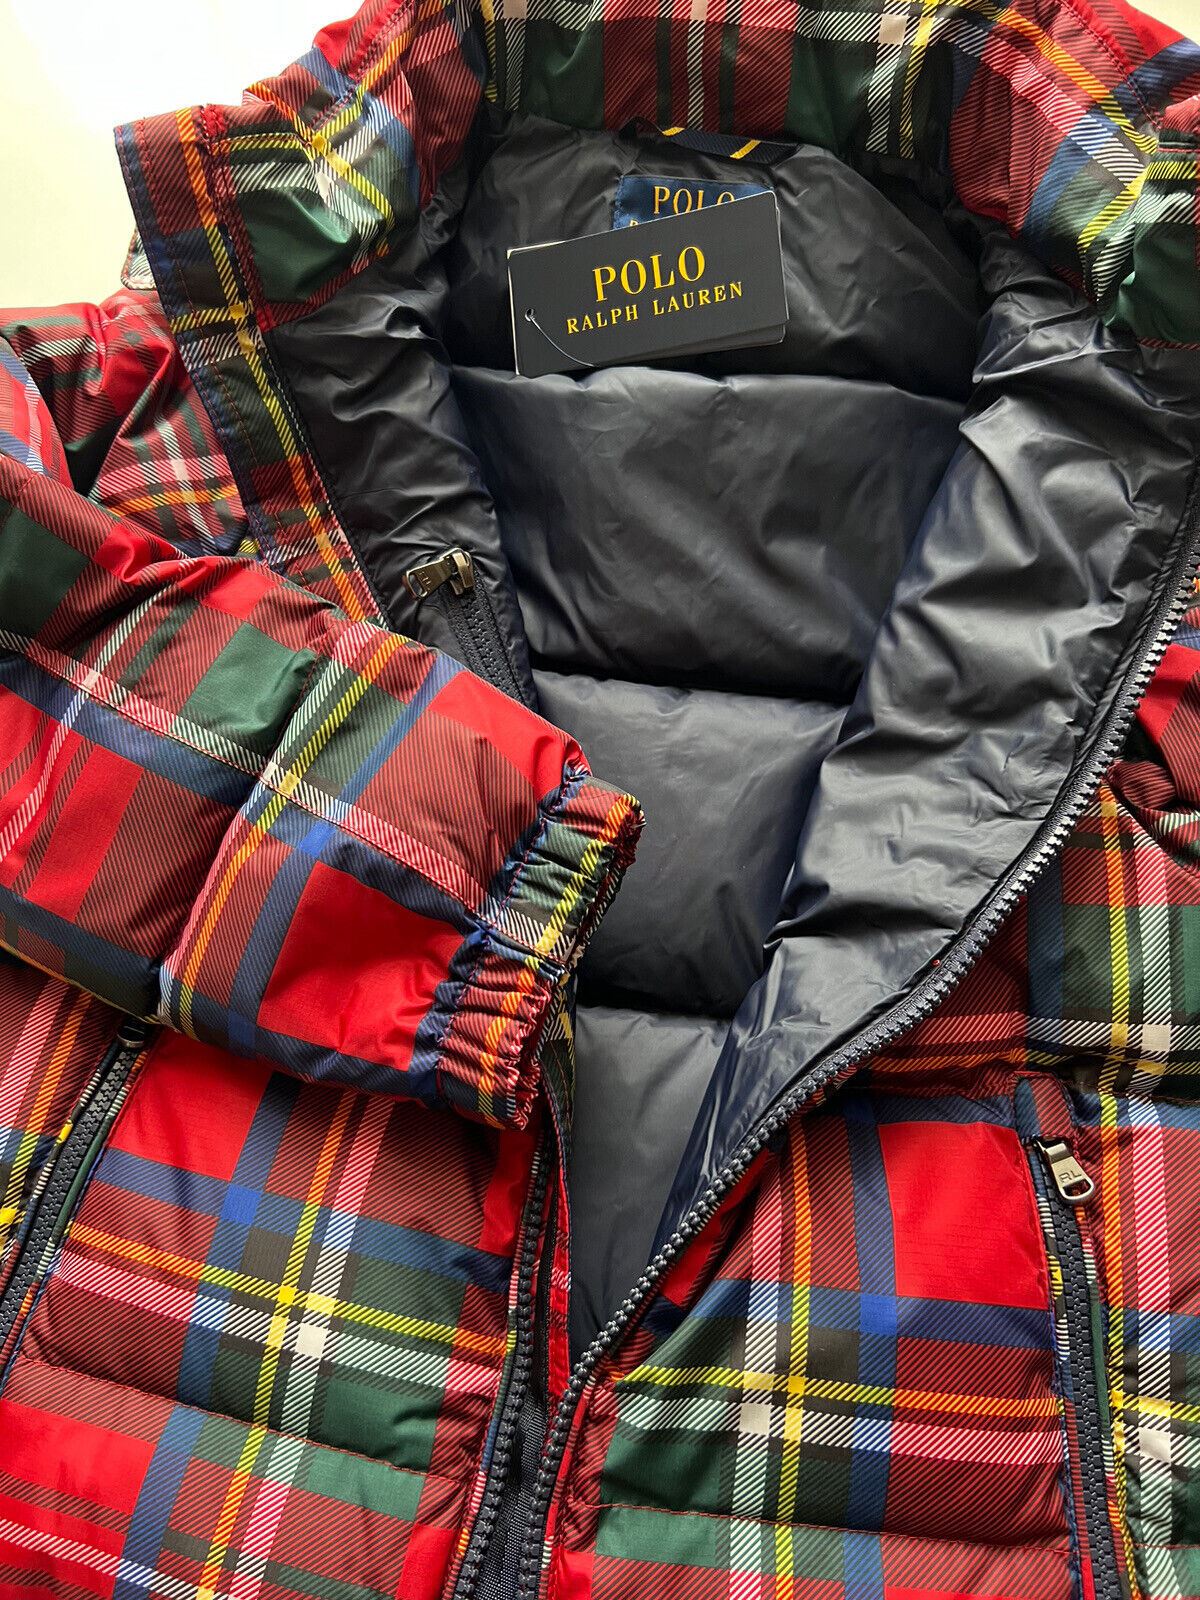 Куртка Polo Ralph Lauren для мальчиков с худи красного цвета S (8 лет) для мальчика (8 лет) за 185 долл. США (NWT) 